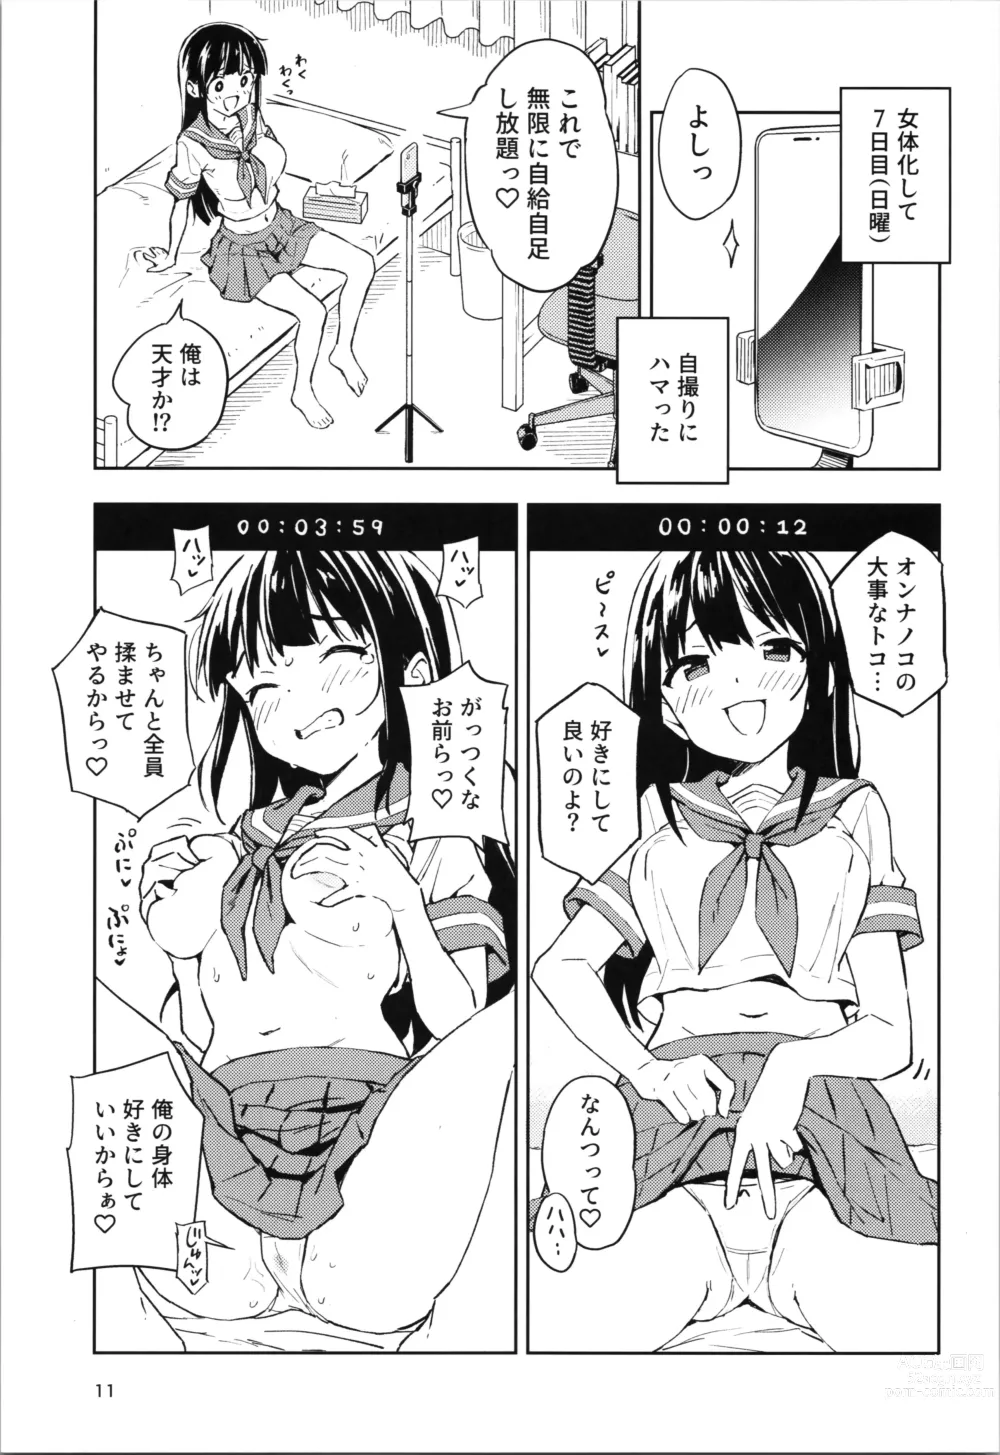 Page 11 of doujinshi 1-kagetsu Ninshin Shinakereba Otoko ni Modoreru Hanashi